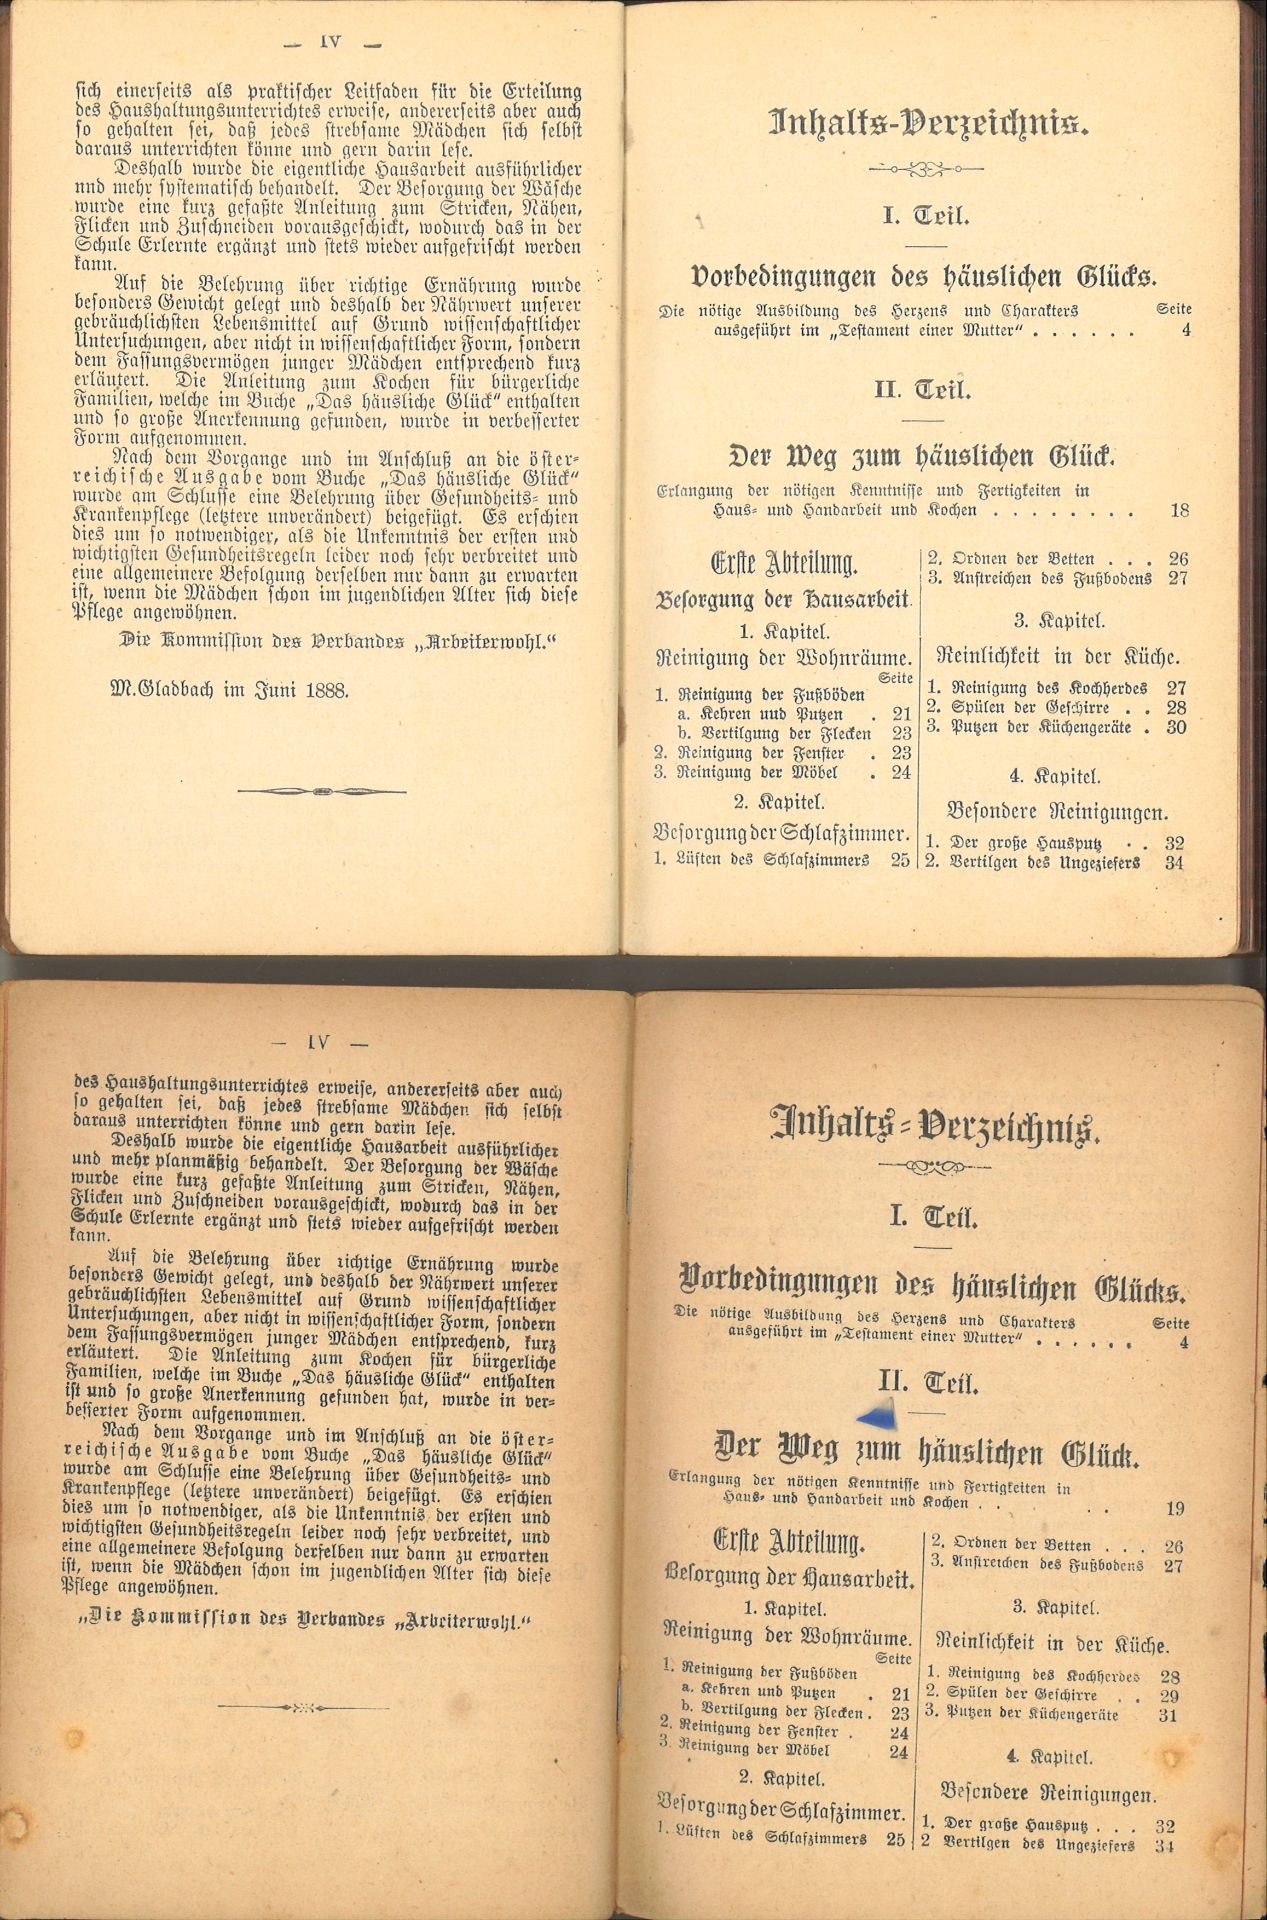 Wegweiser zum häuslichen Glück für Mädchen, 2 Bände, 1x 18. Auflage, 1x 1888 - Image 2 of 2